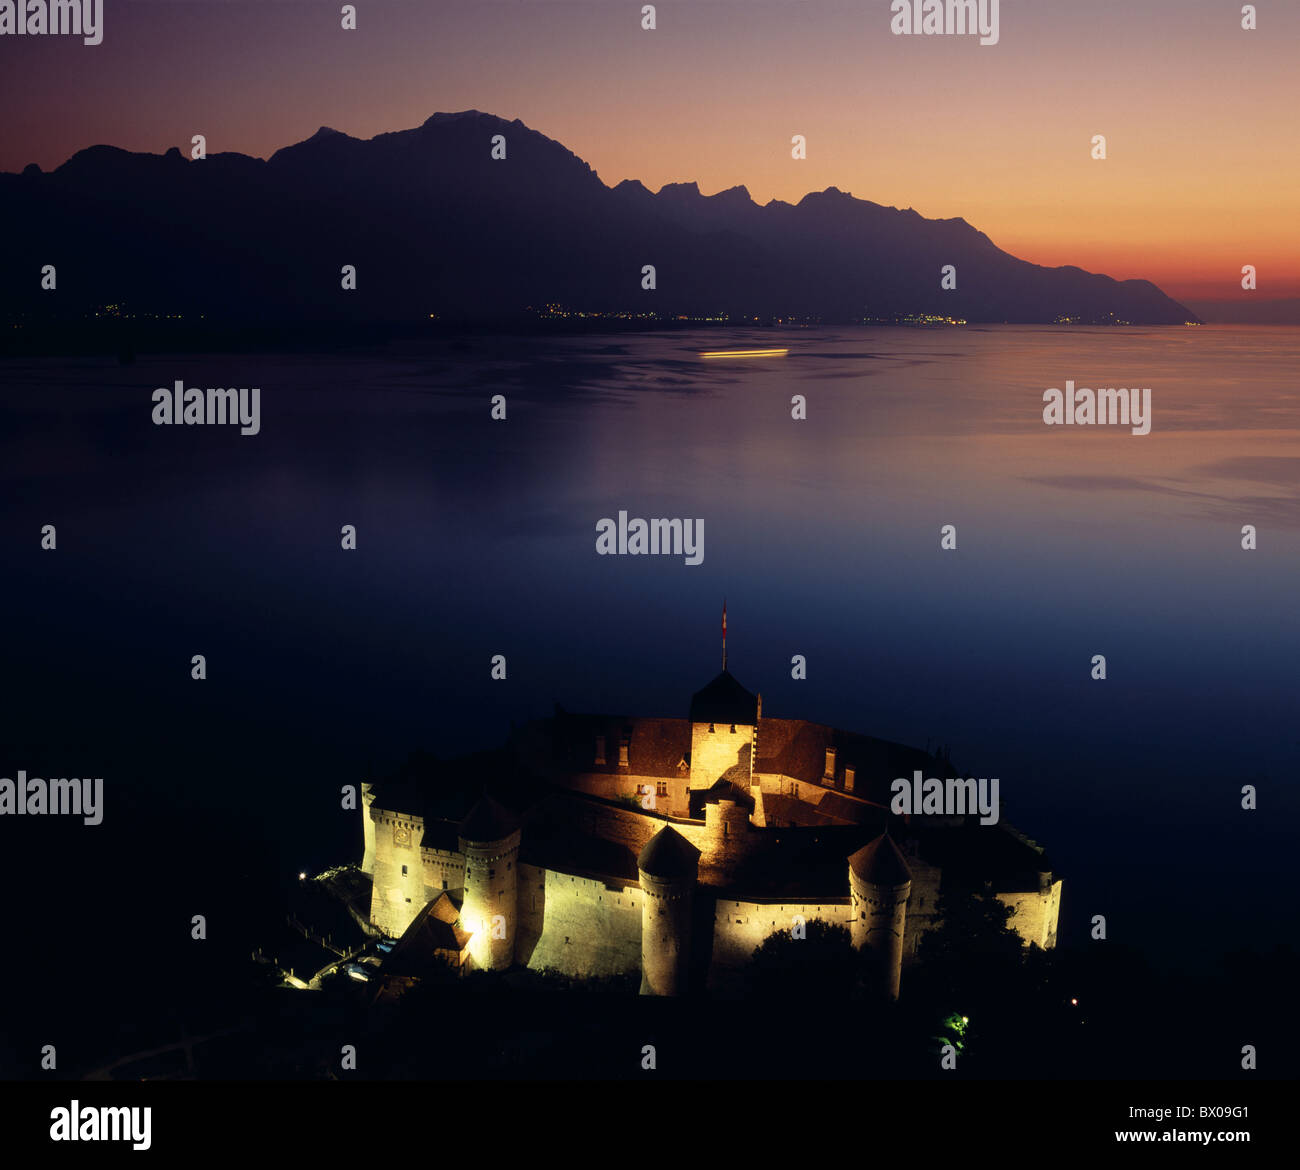 Beleuchtung des Genfer Sees bei Nacht Schloss Chillon Schweiz Europa Stimmung Übersicht Waadt Stockfoto